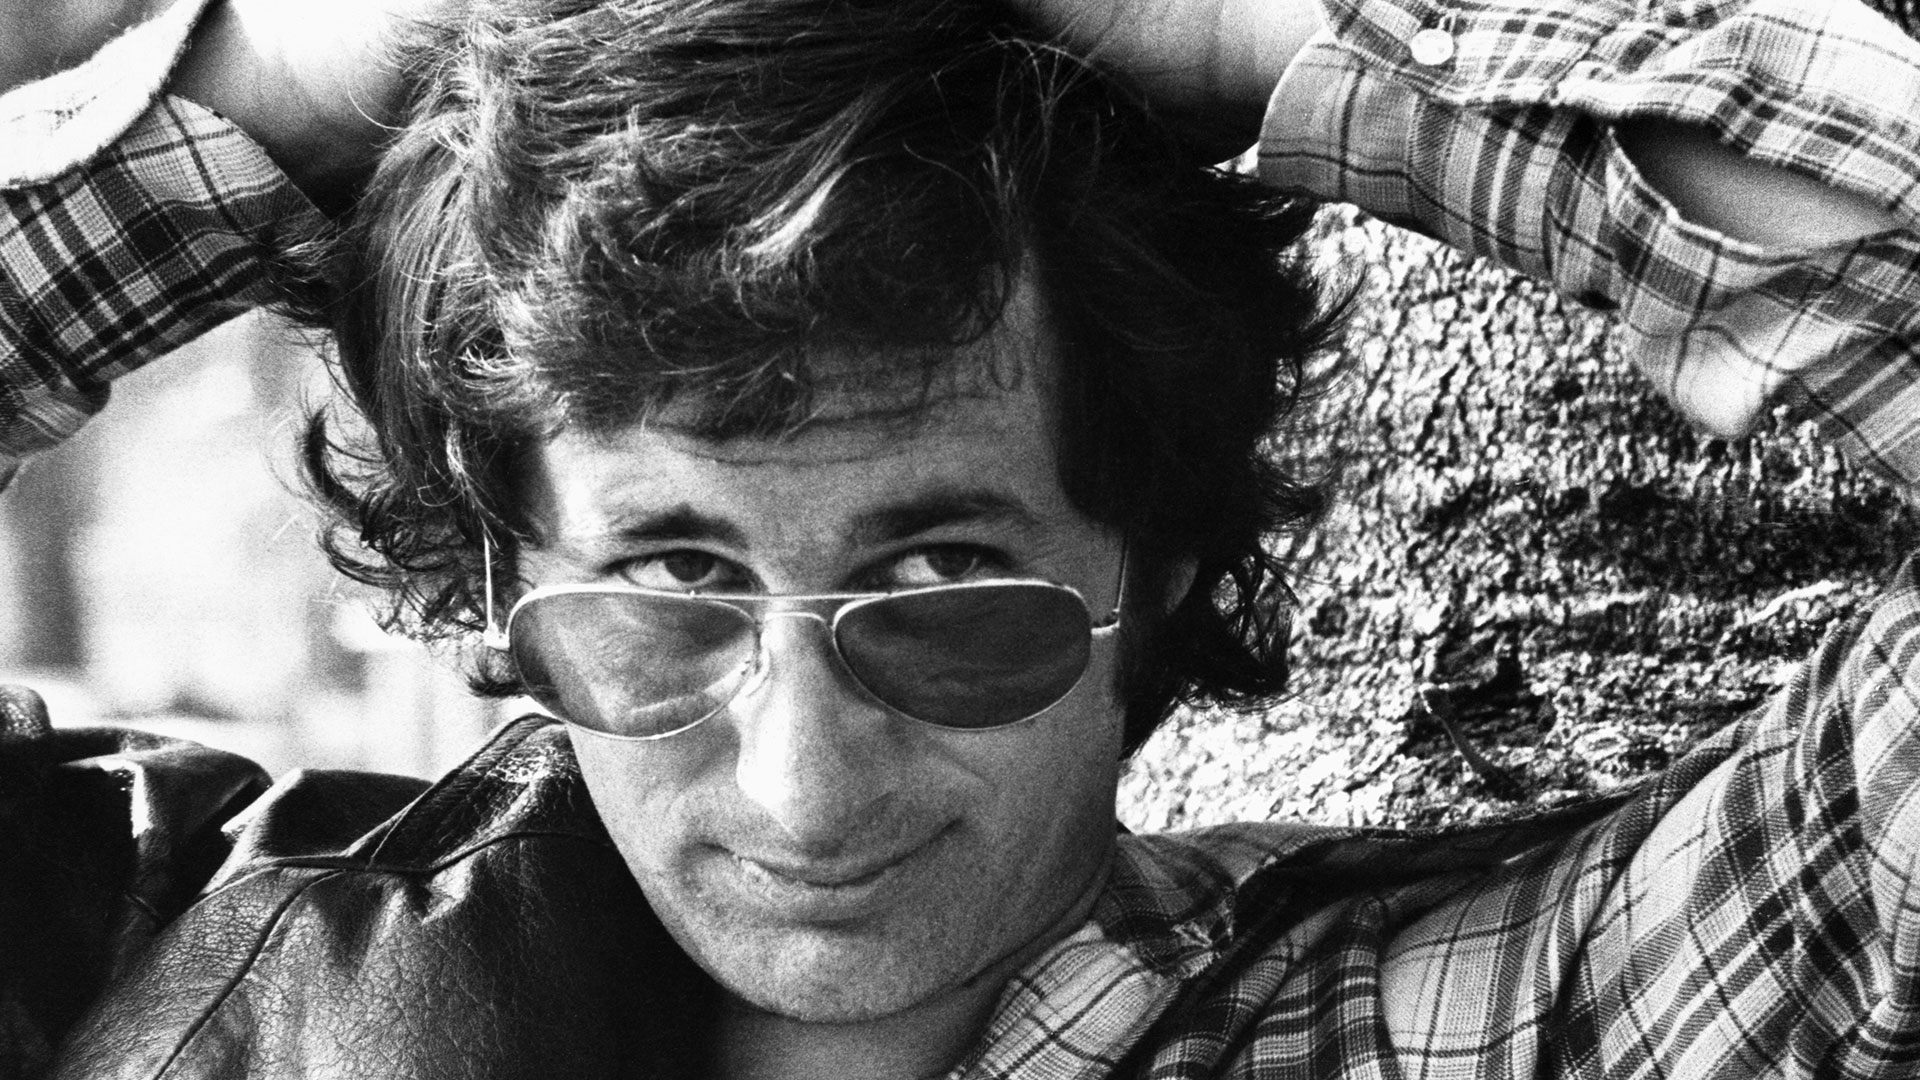 Spielberg contó un dato curioso sobre sus hábitos: “Nunca he tomado una taza de café en toda mi vida. Odio el sabor desde que era niño” (Foto: Getty Images)